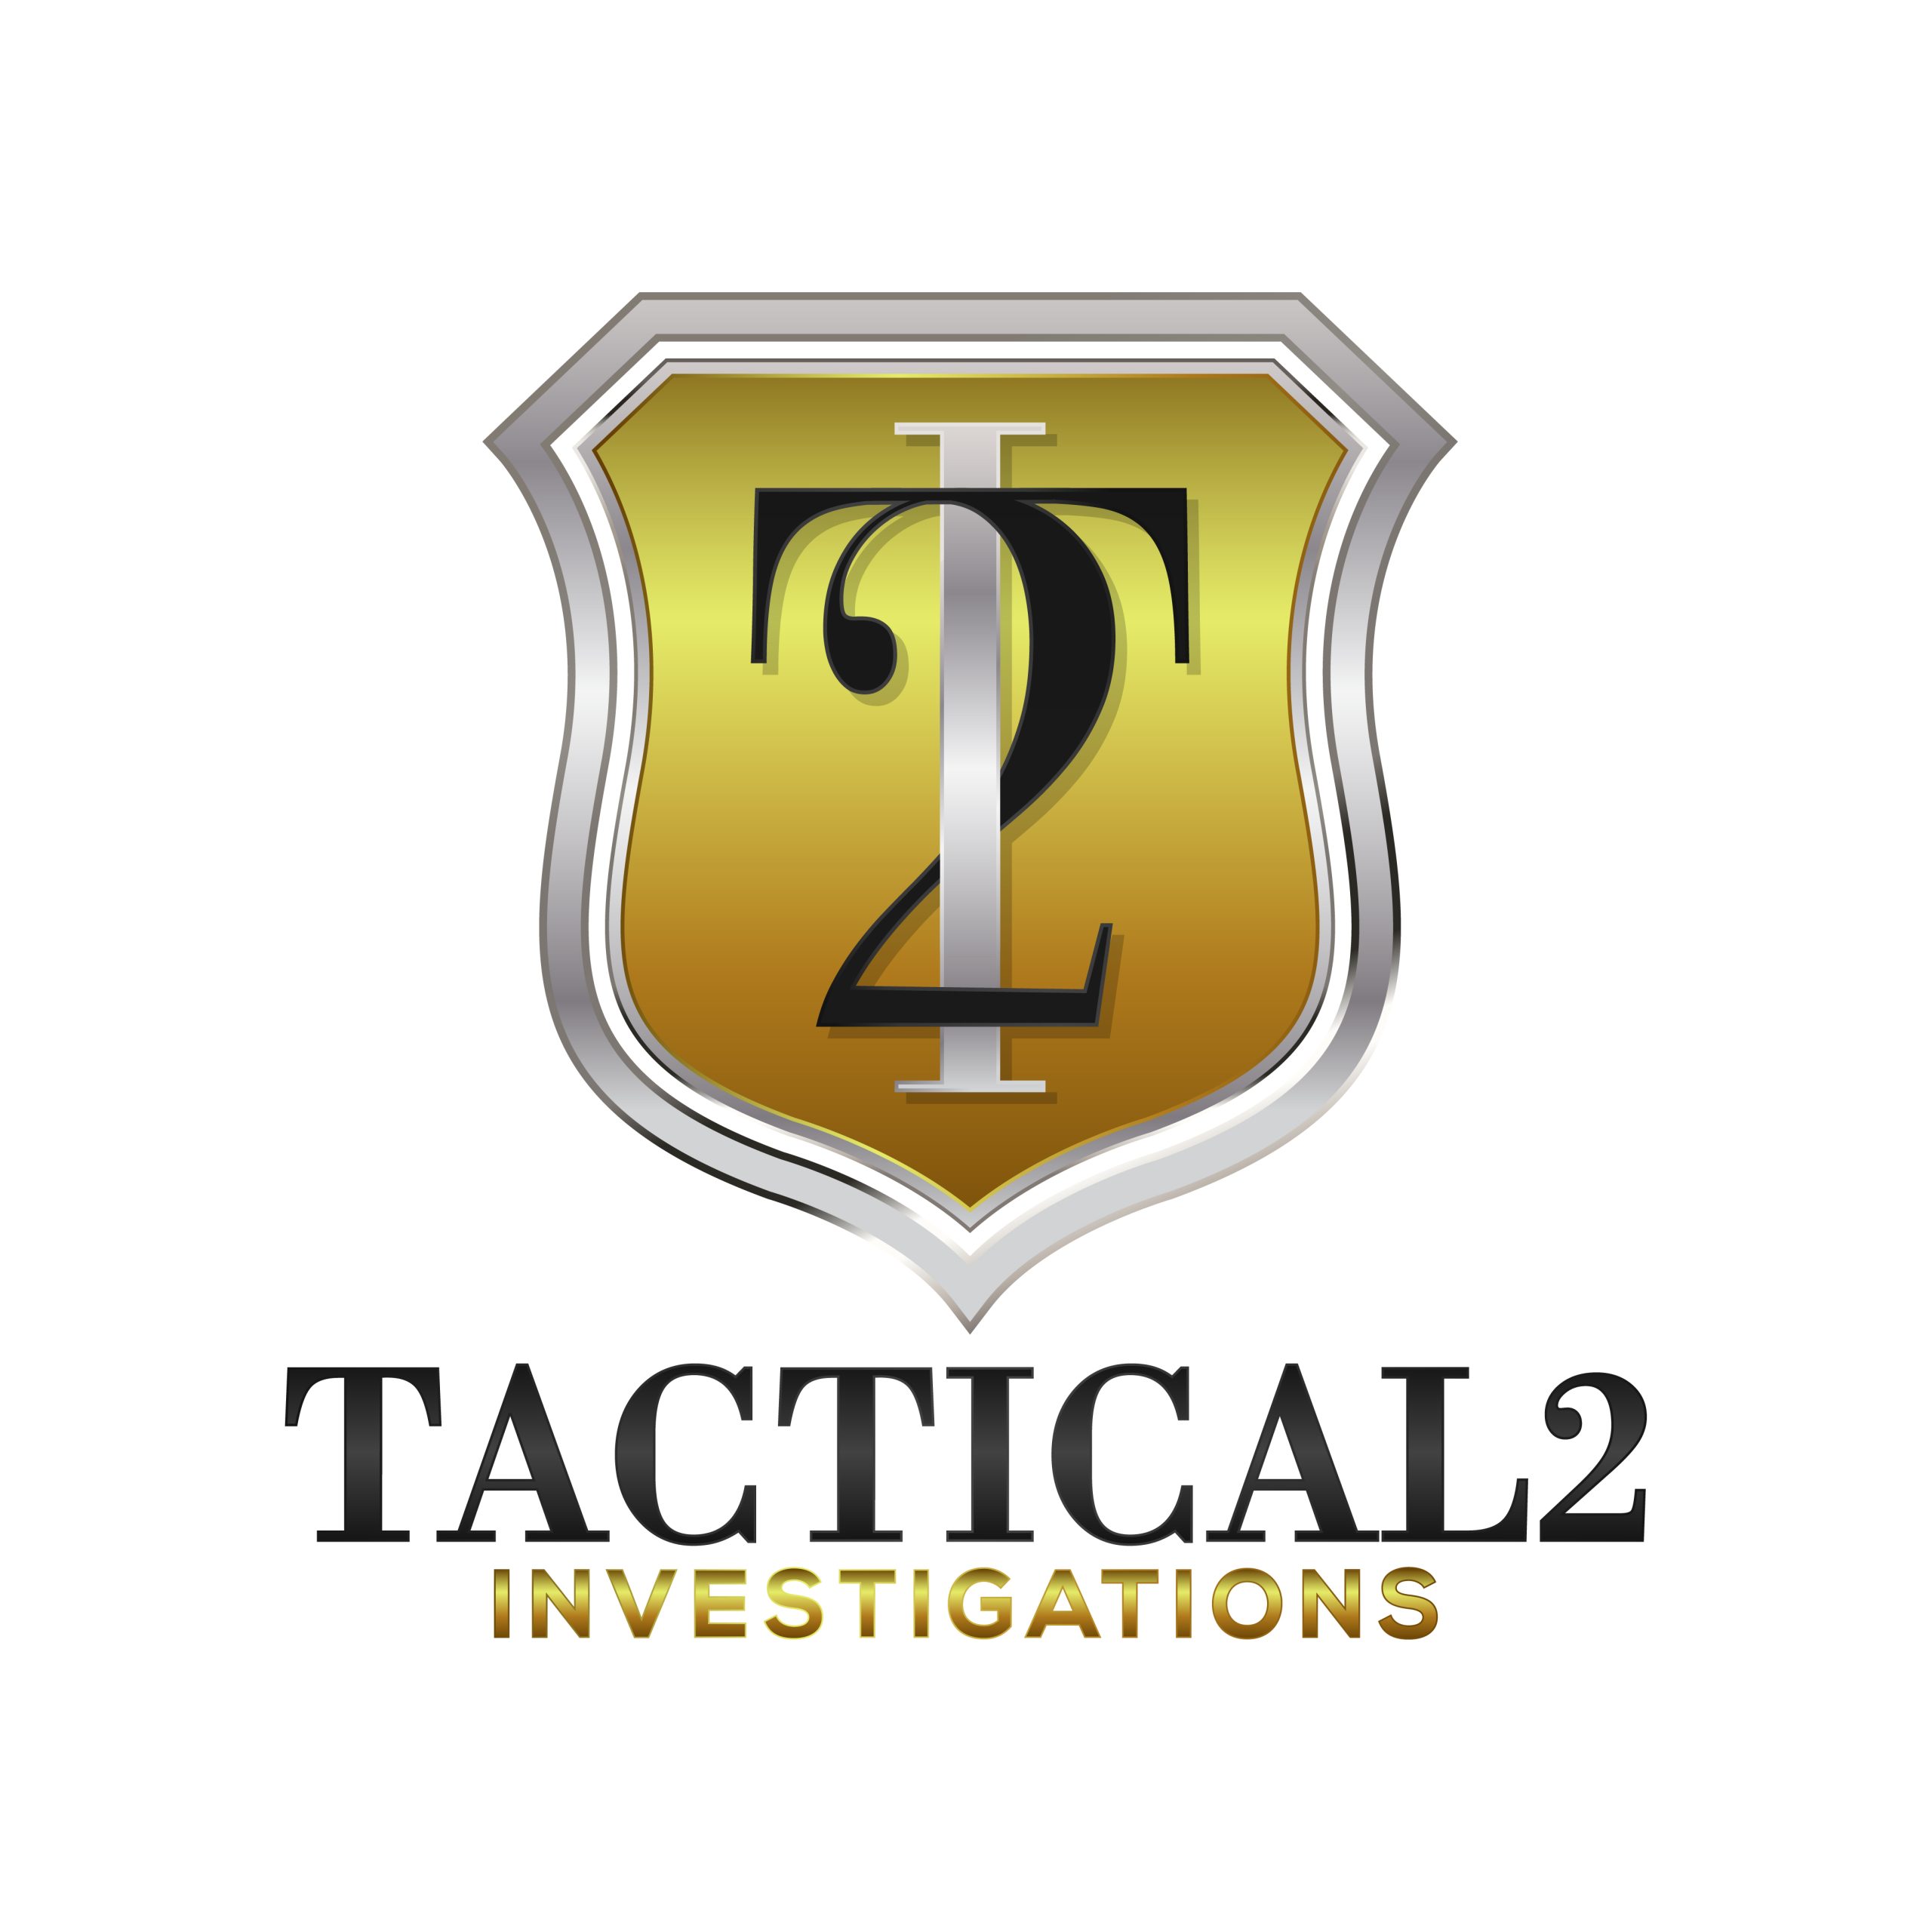 Tactical 2 Investigations